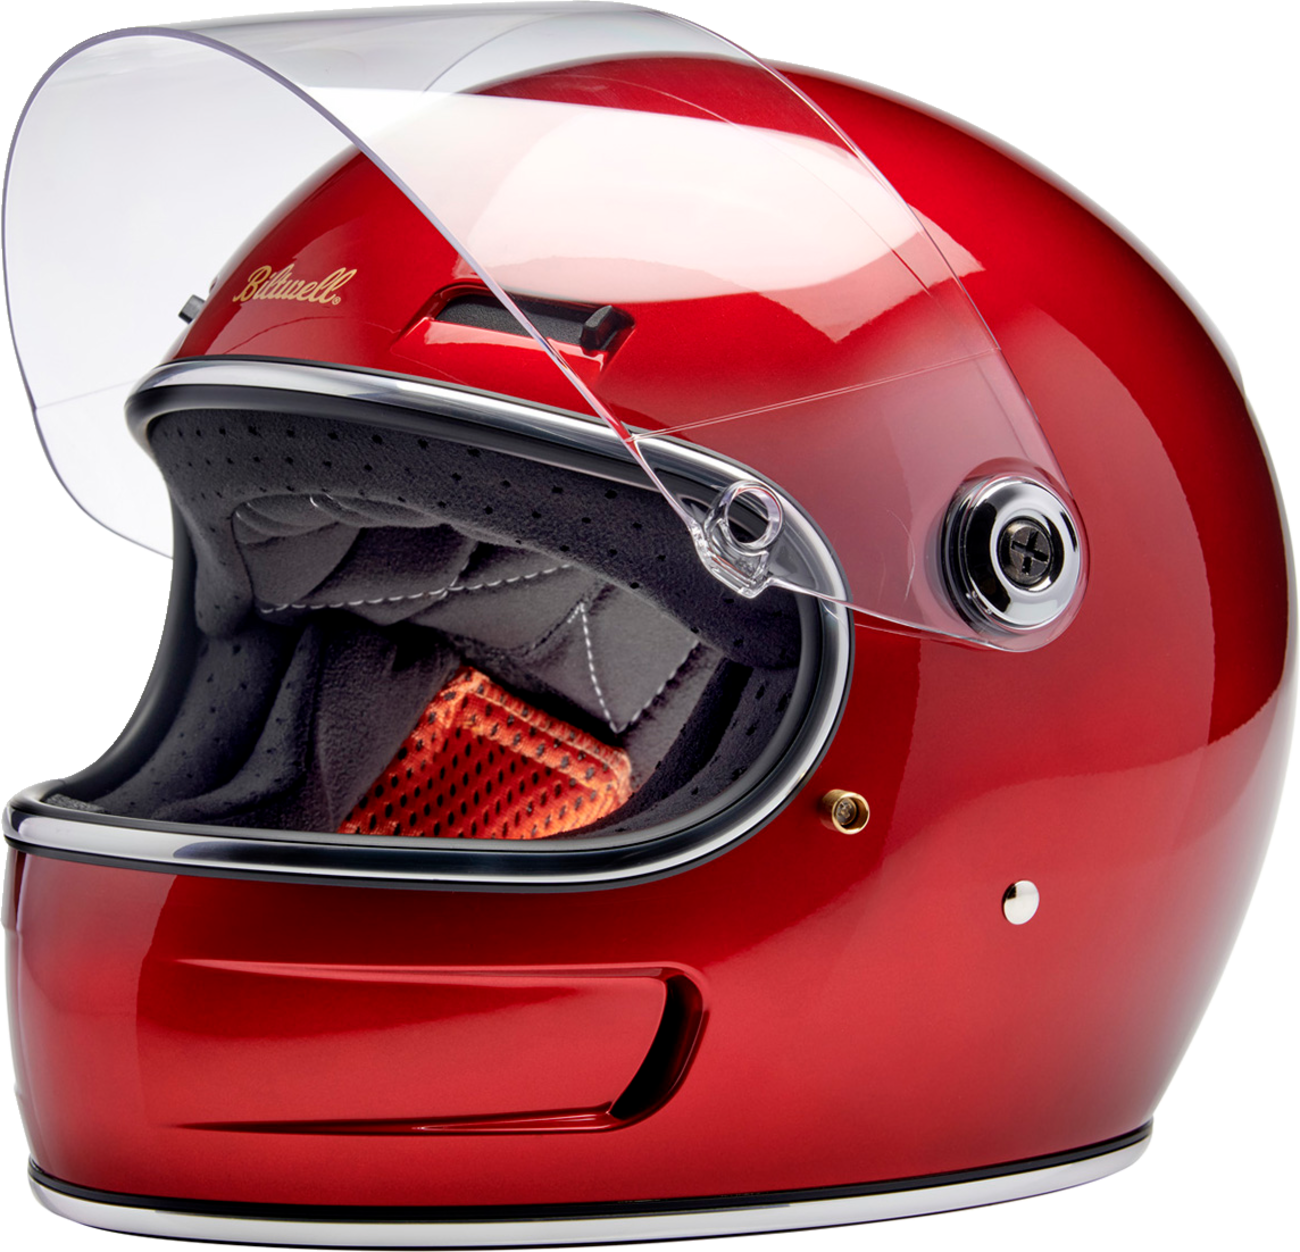 BILTWELL Gringo SV Helmet - Metallic Cherry Red - XL 1006-351-505